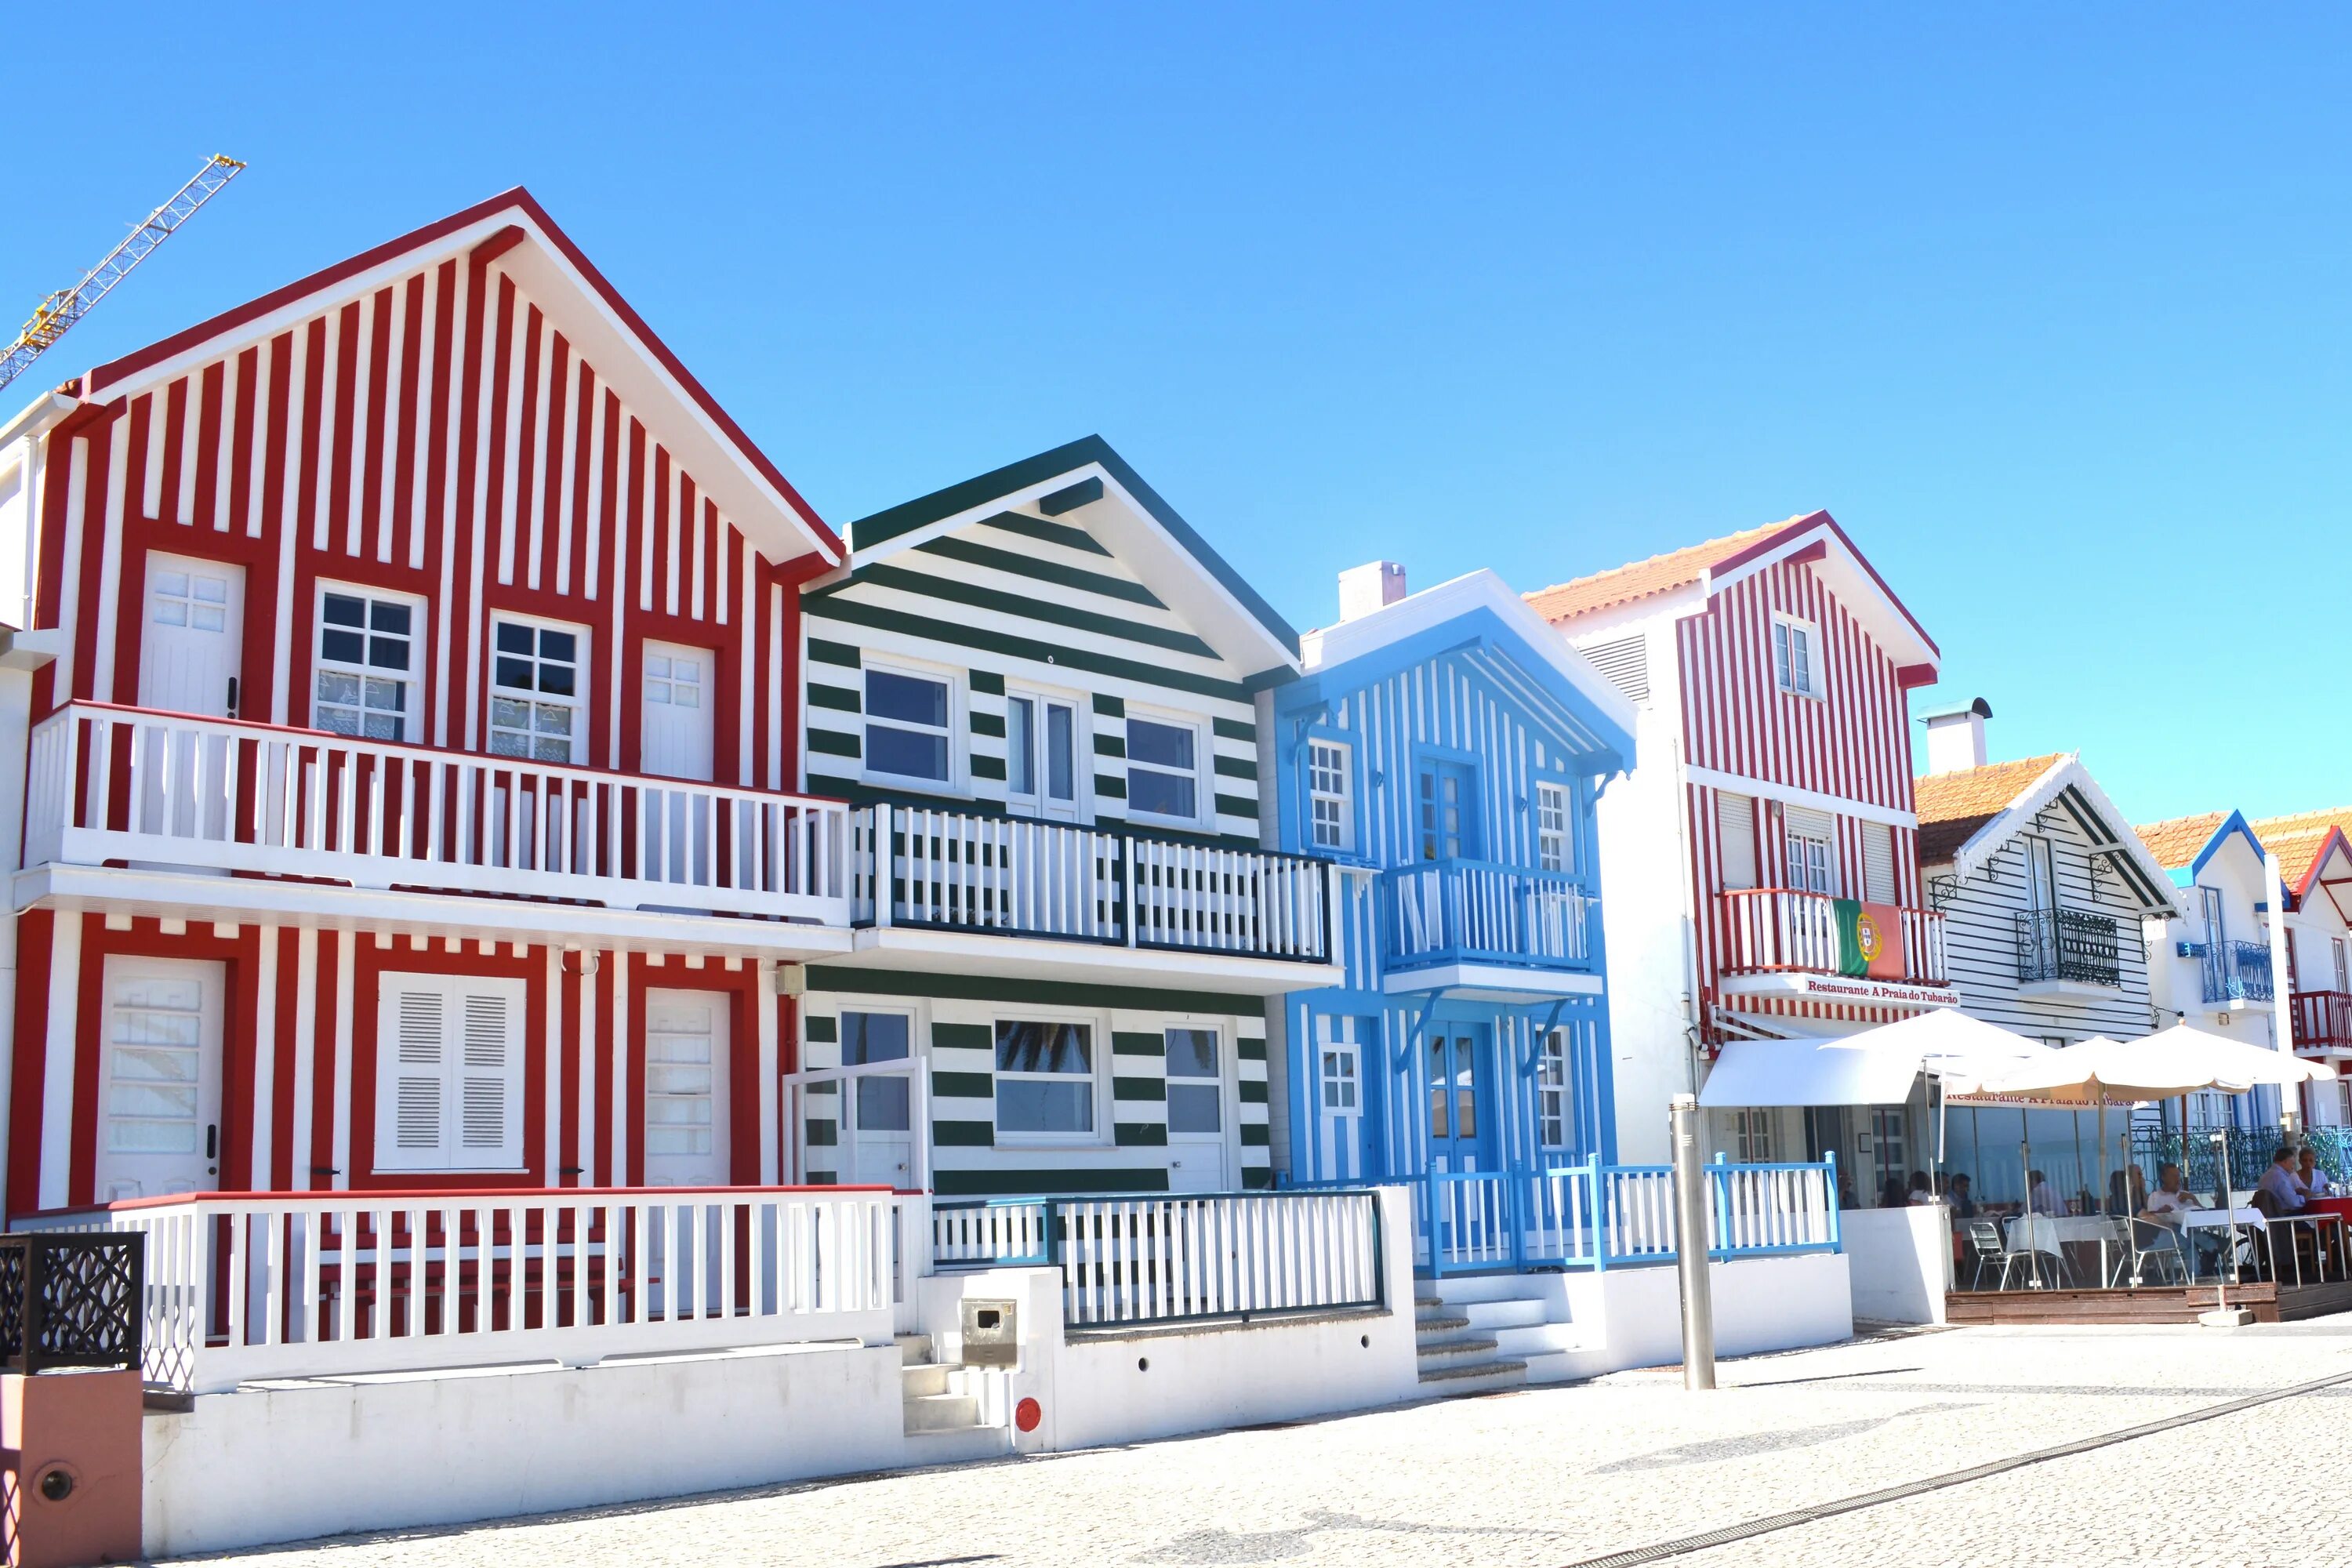 Домики в Авейру. Авейру Португалия. Costa Nova Aveiro Portugal. Цветные дома в Авейру. Colorful houses